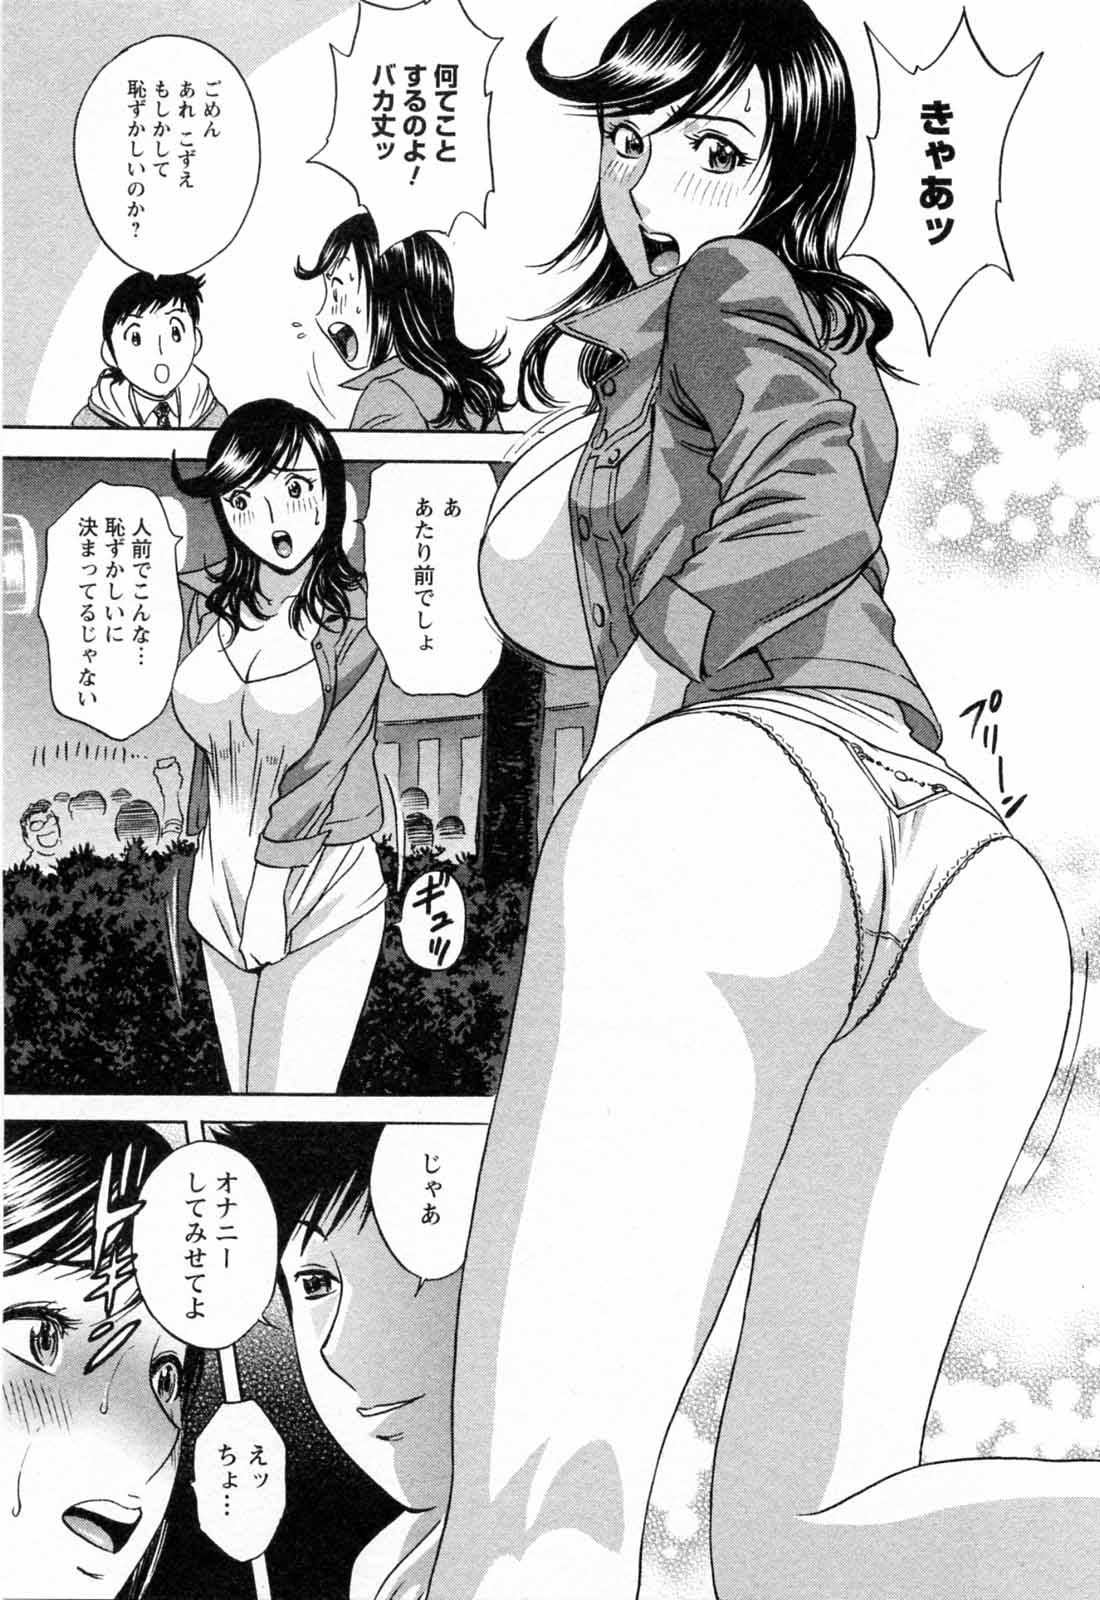 [Hidemaru] Mo-Retsu! Boin Sensei (Boing Boing Teacher) Vol.5 62